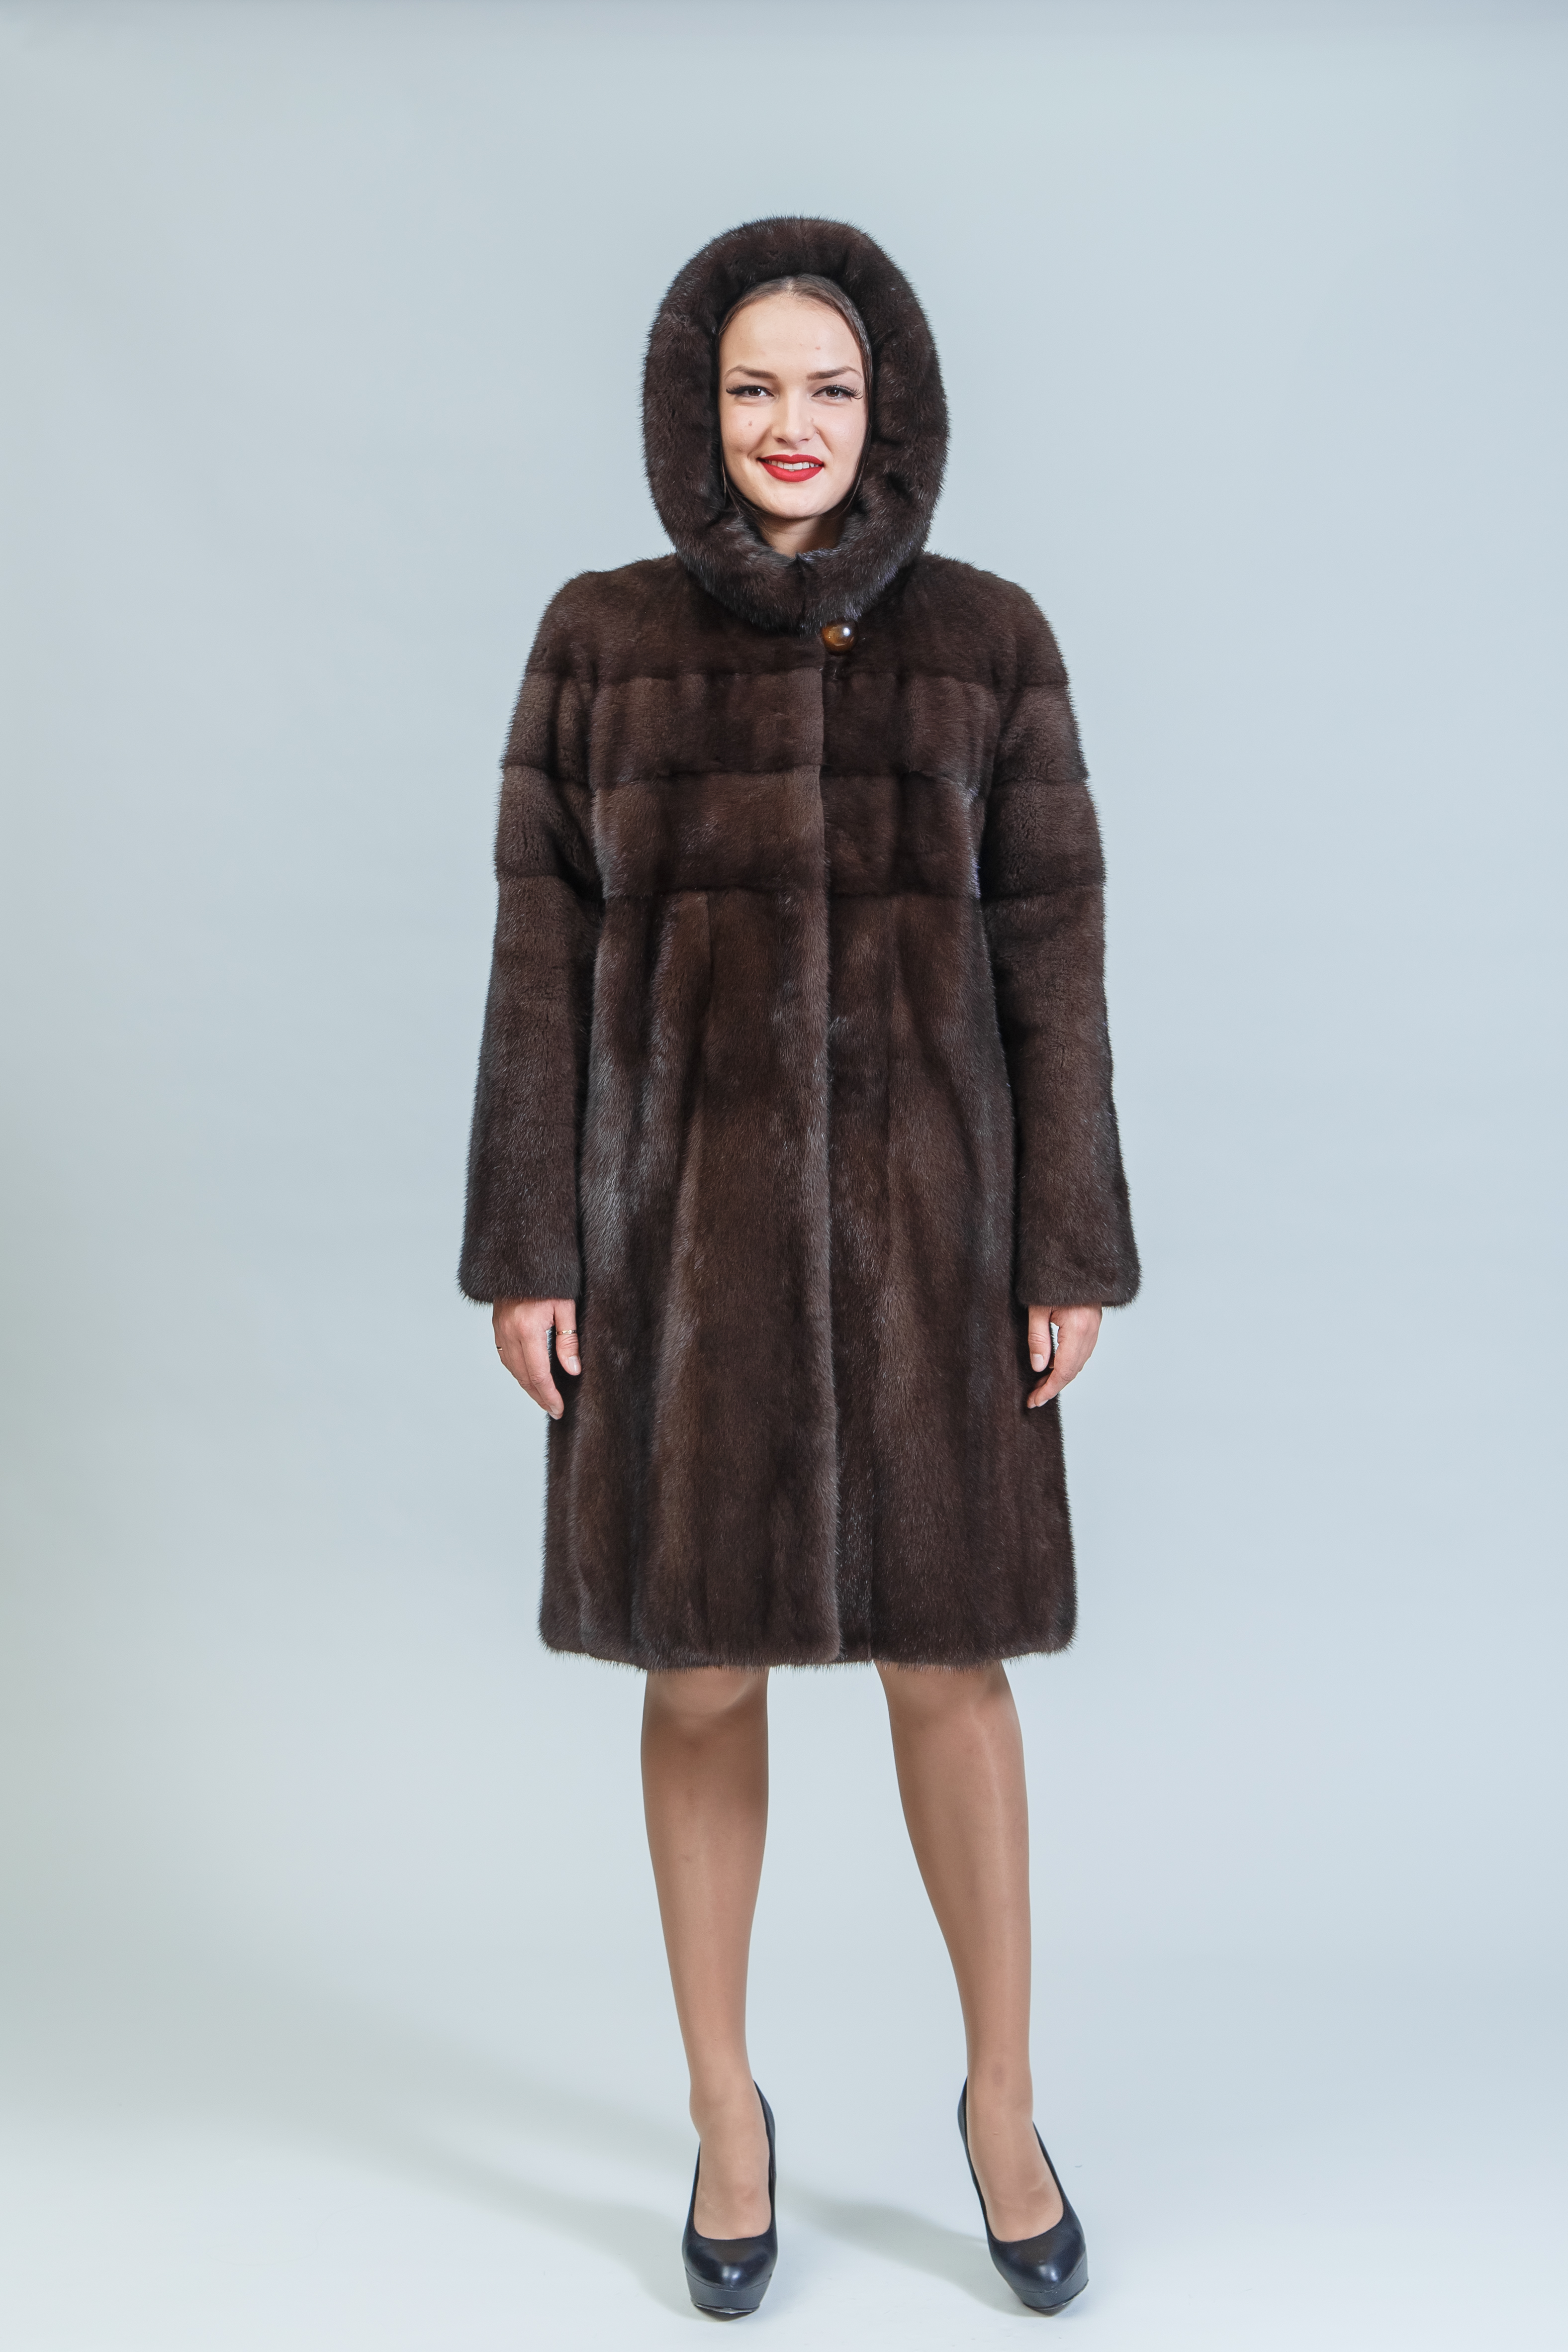 Пальто женское из норки с капюшоном меховой фабрики Елена с5036